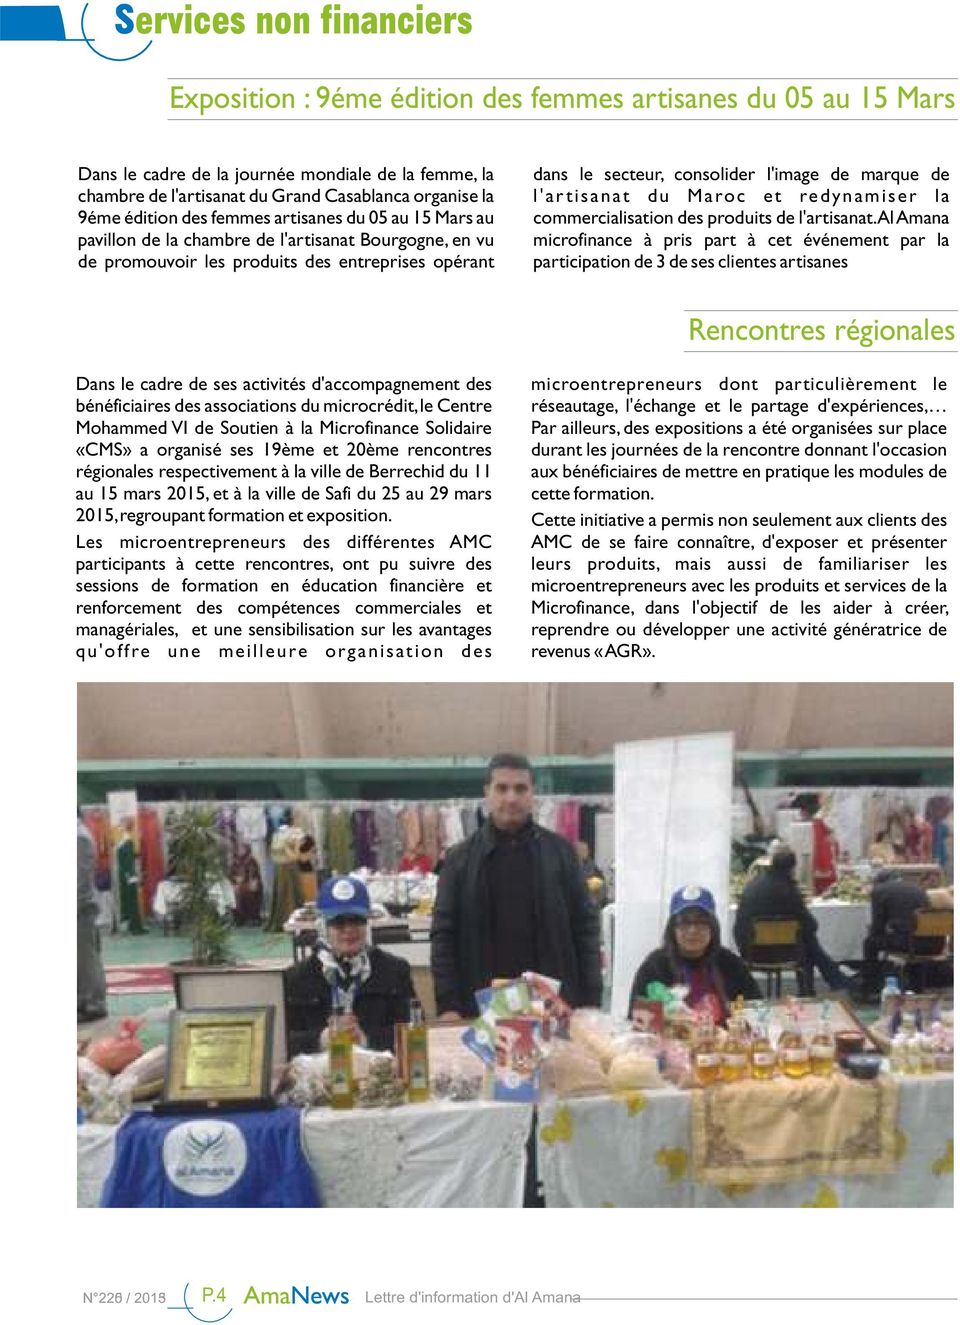 marque de l'ar tisanat du Maroc et redynamiser la commercialisation des produits de l'artisanat.